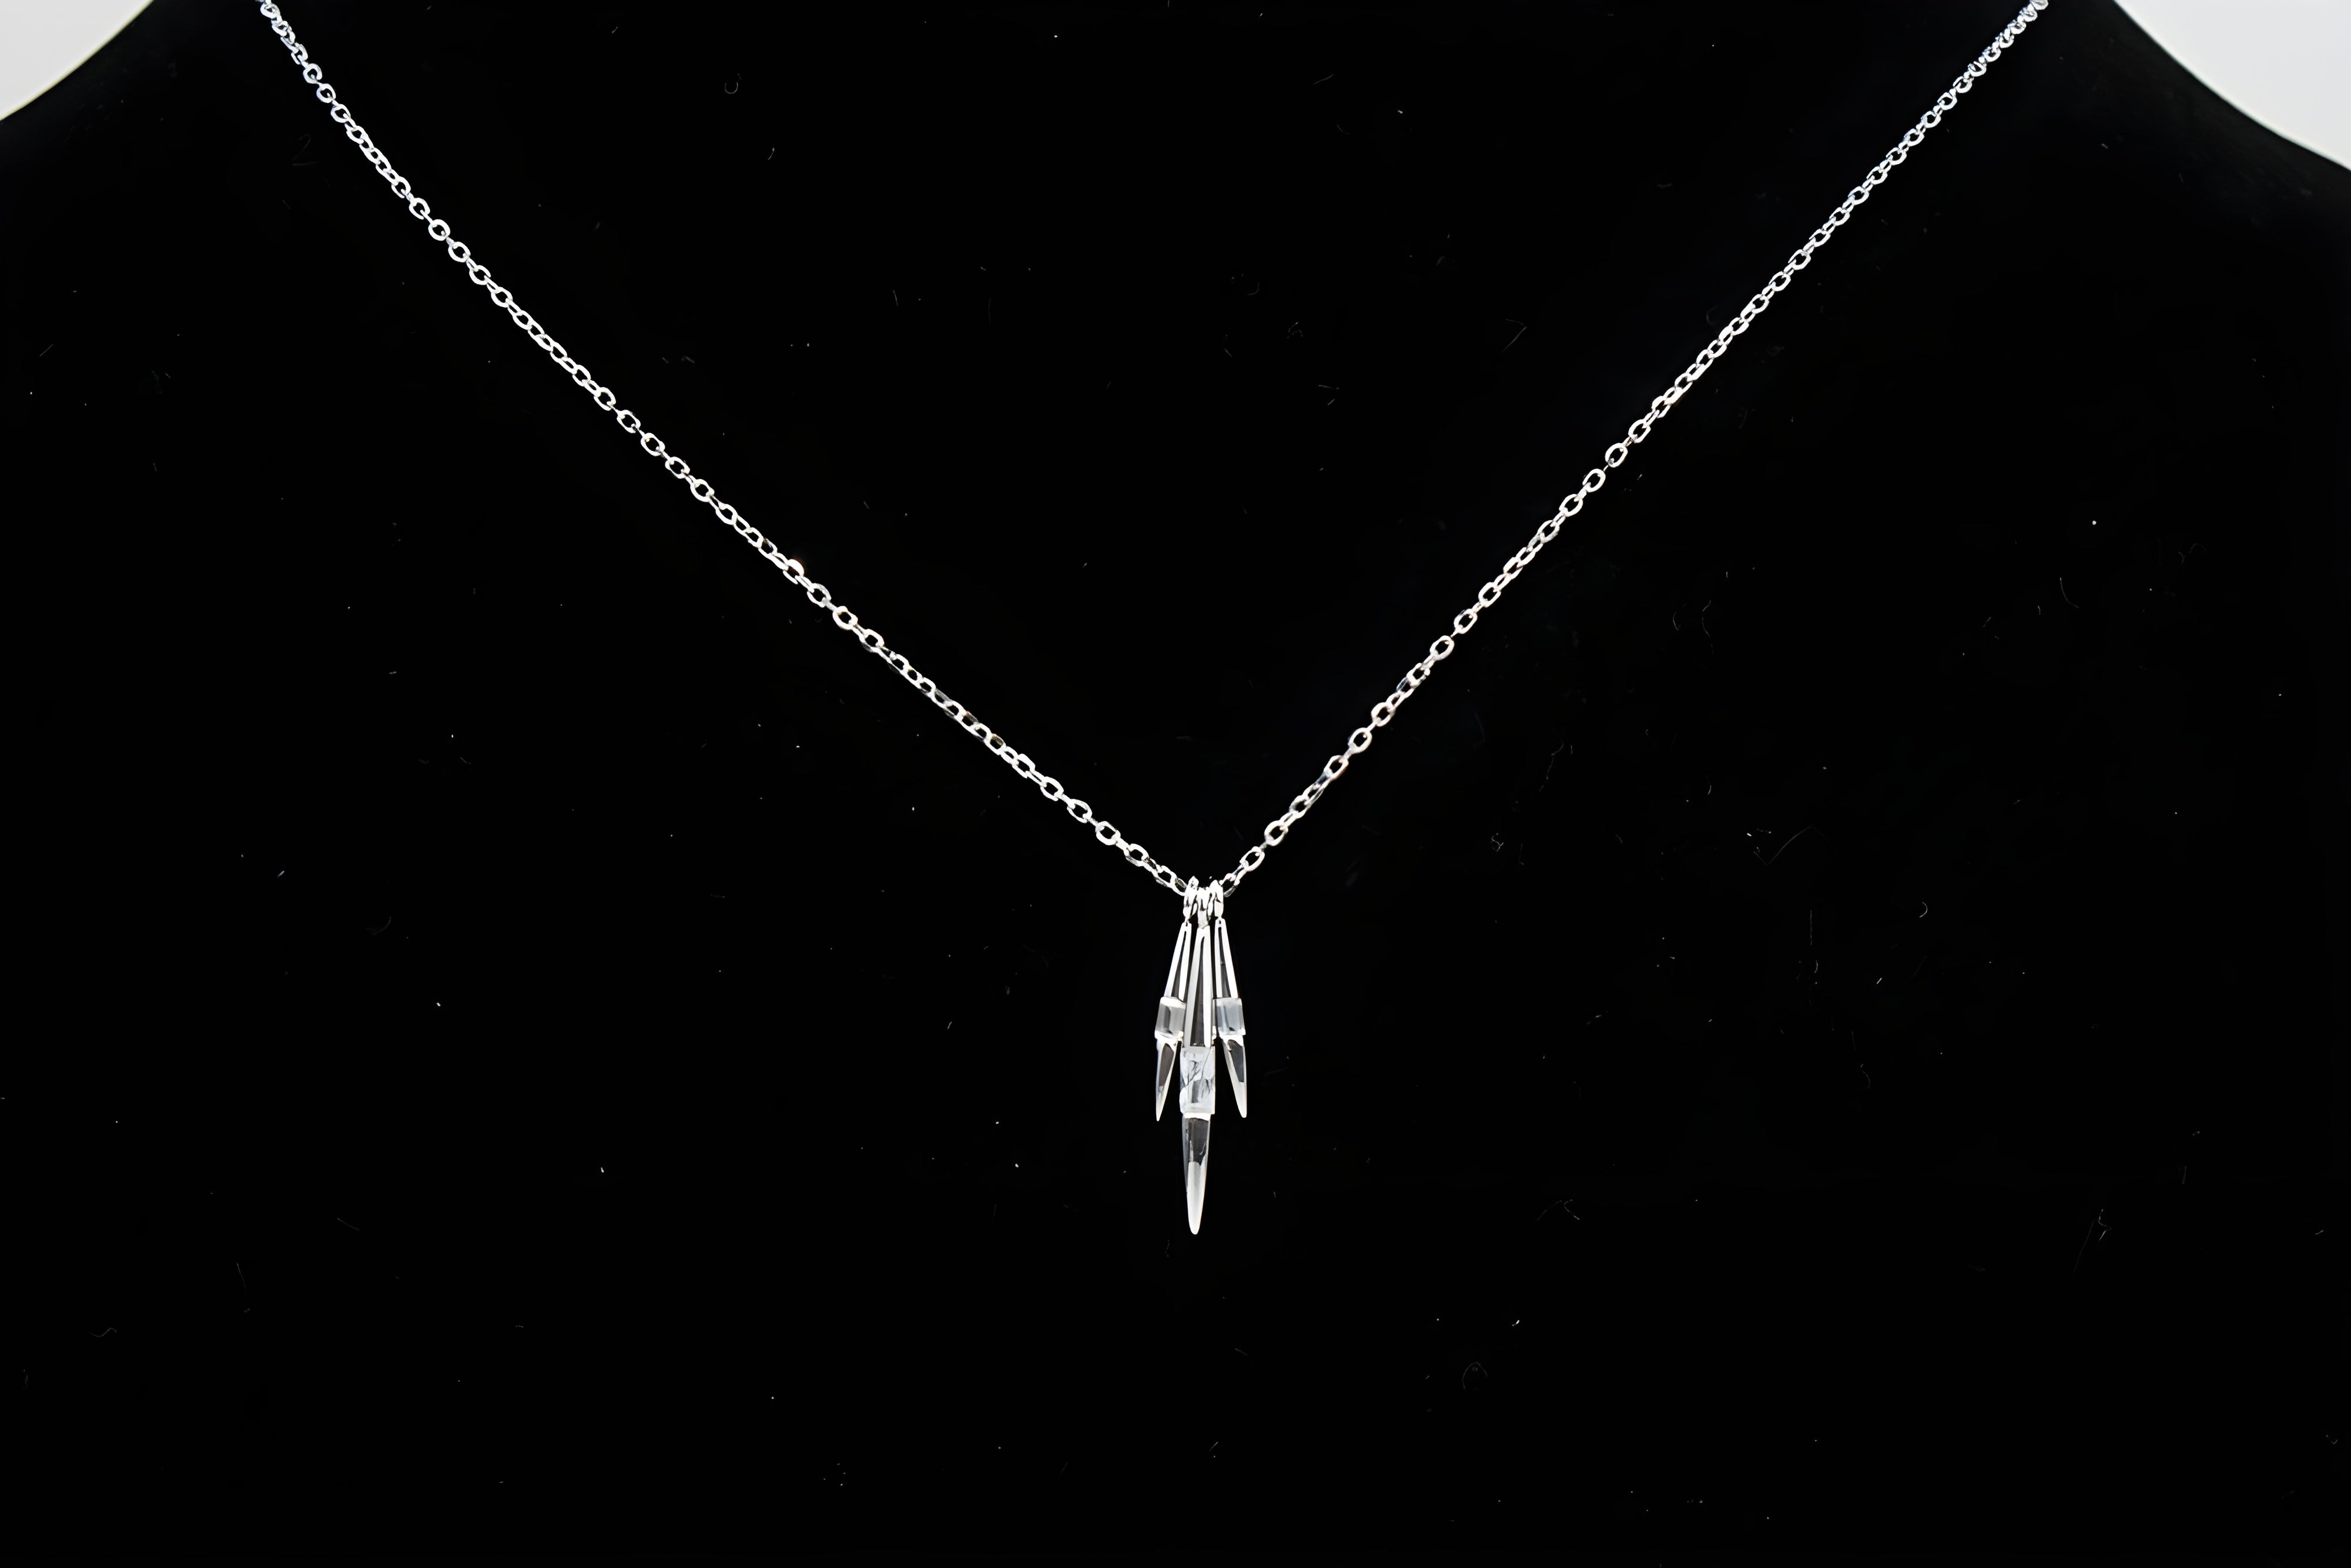 Swarovski Crystal Tri-Line Pendant in Sterling Silver